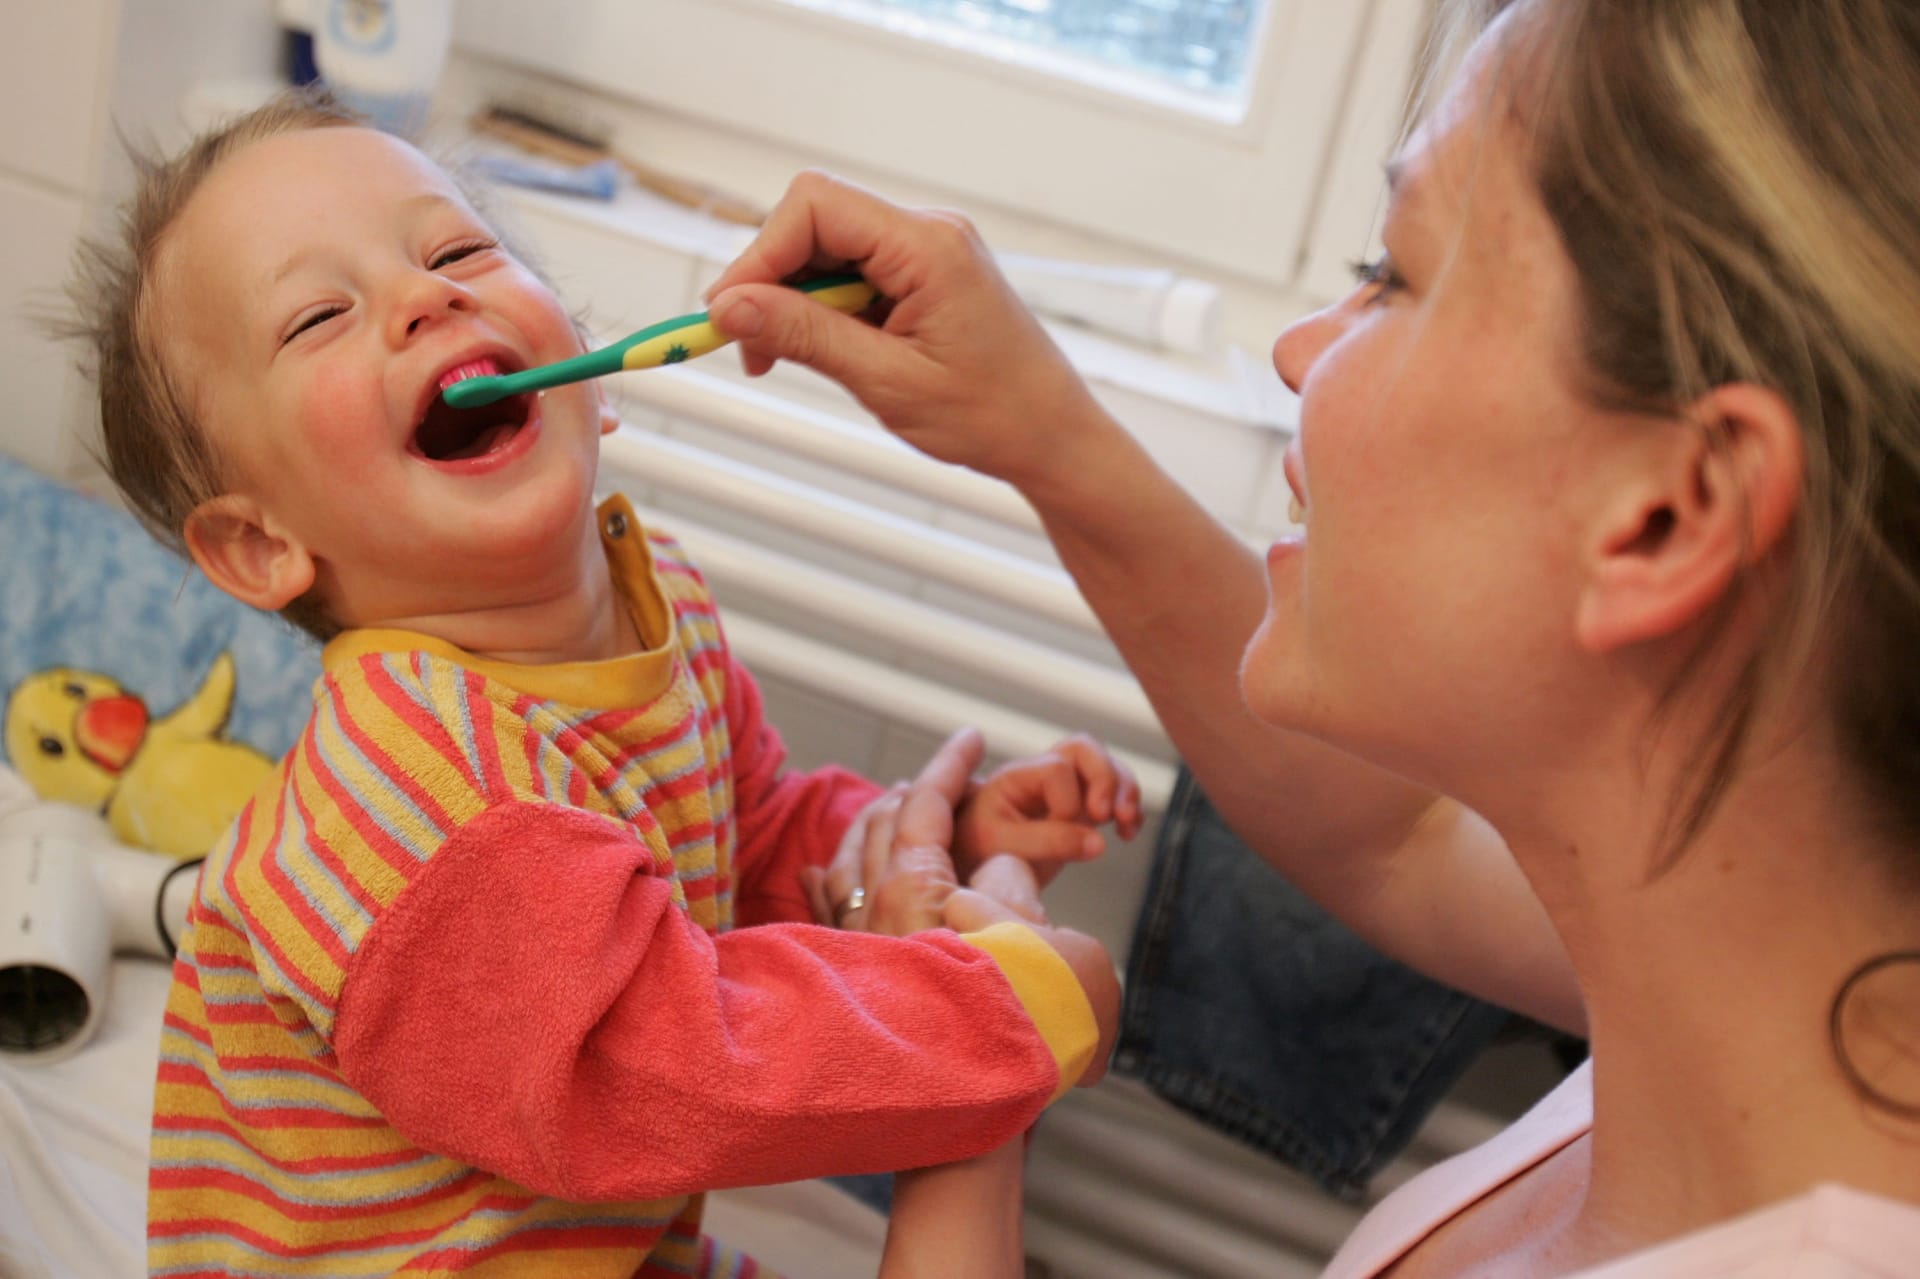 الفرشاة القاسية تساعد في تنظيف الأسنان أكثر من الناعمة؟ تعرف إلى خمس معتقدات خاطئة حول تنظيف الأسنان 